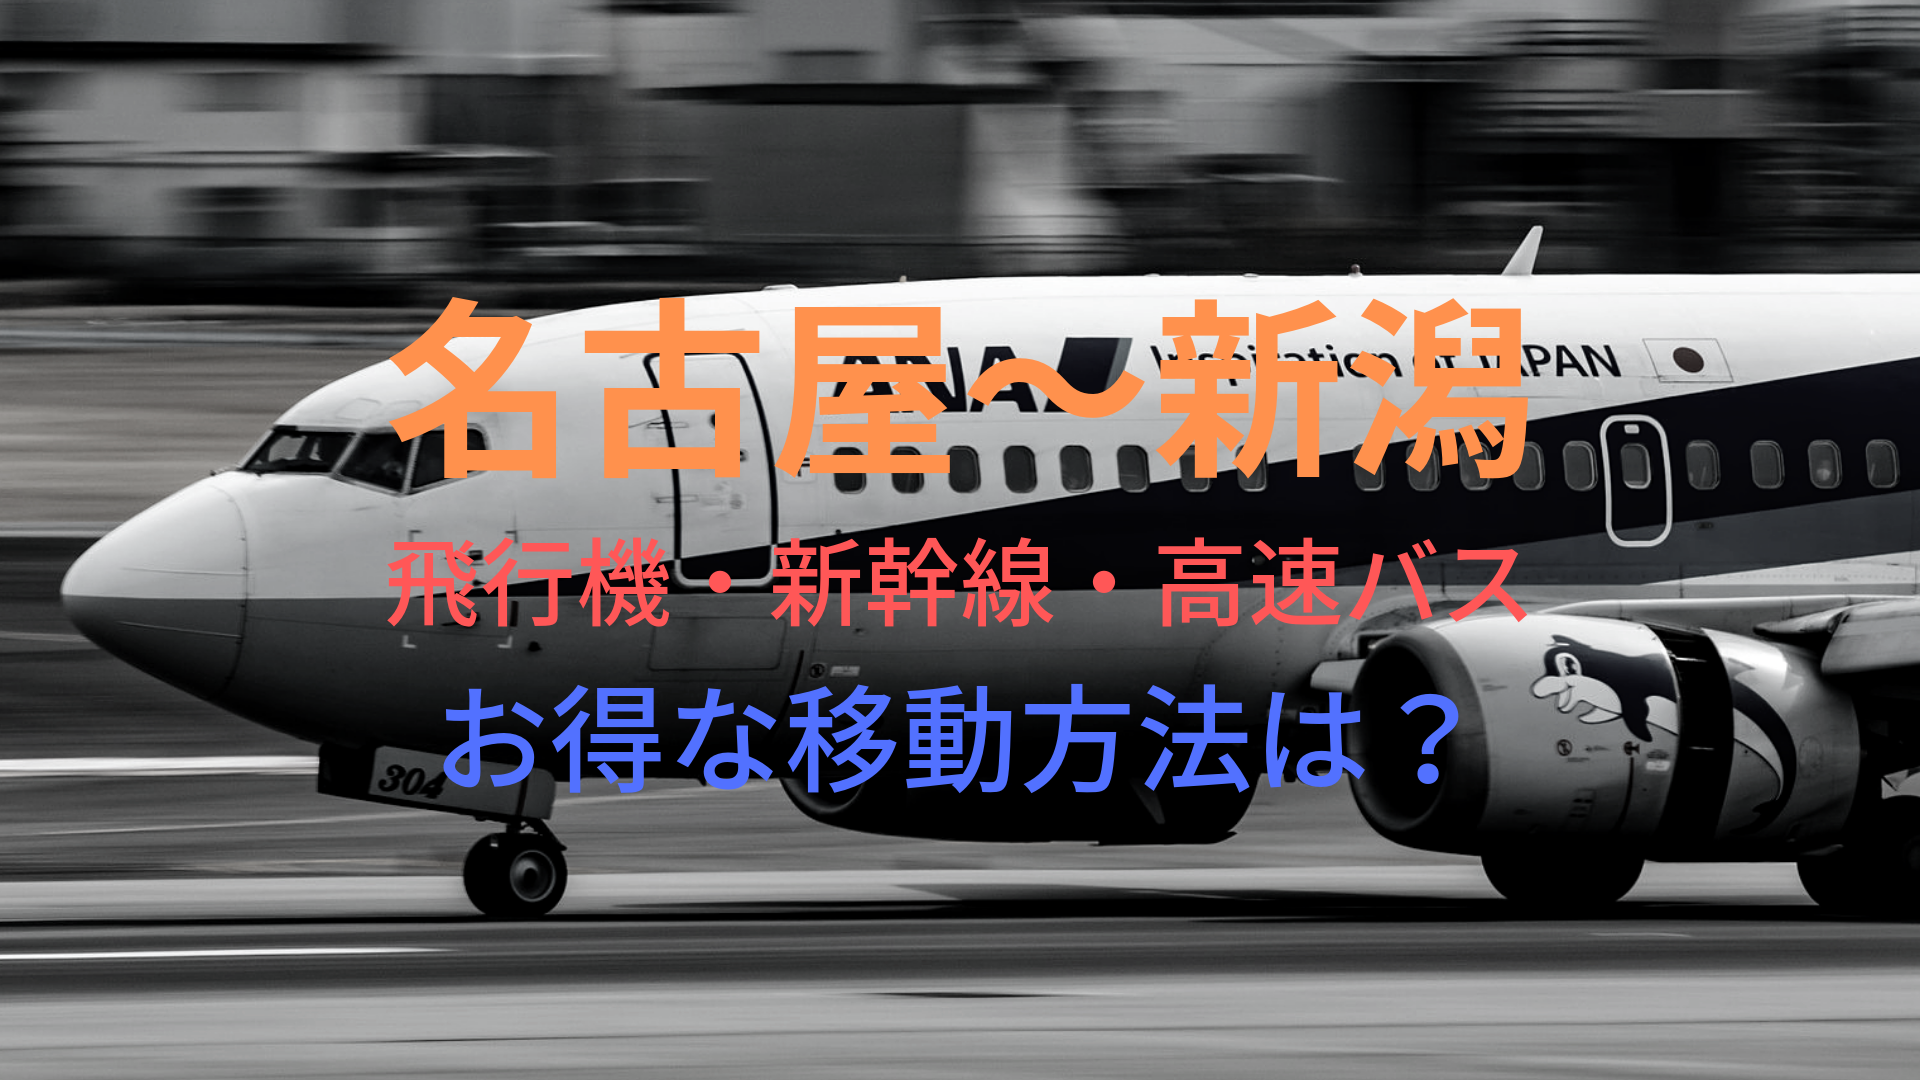 名古屋 新潟 5000円 格安で移動する方法は 飛行機 新幹線 高速バスをそれぞれ比較 ばしたく交通